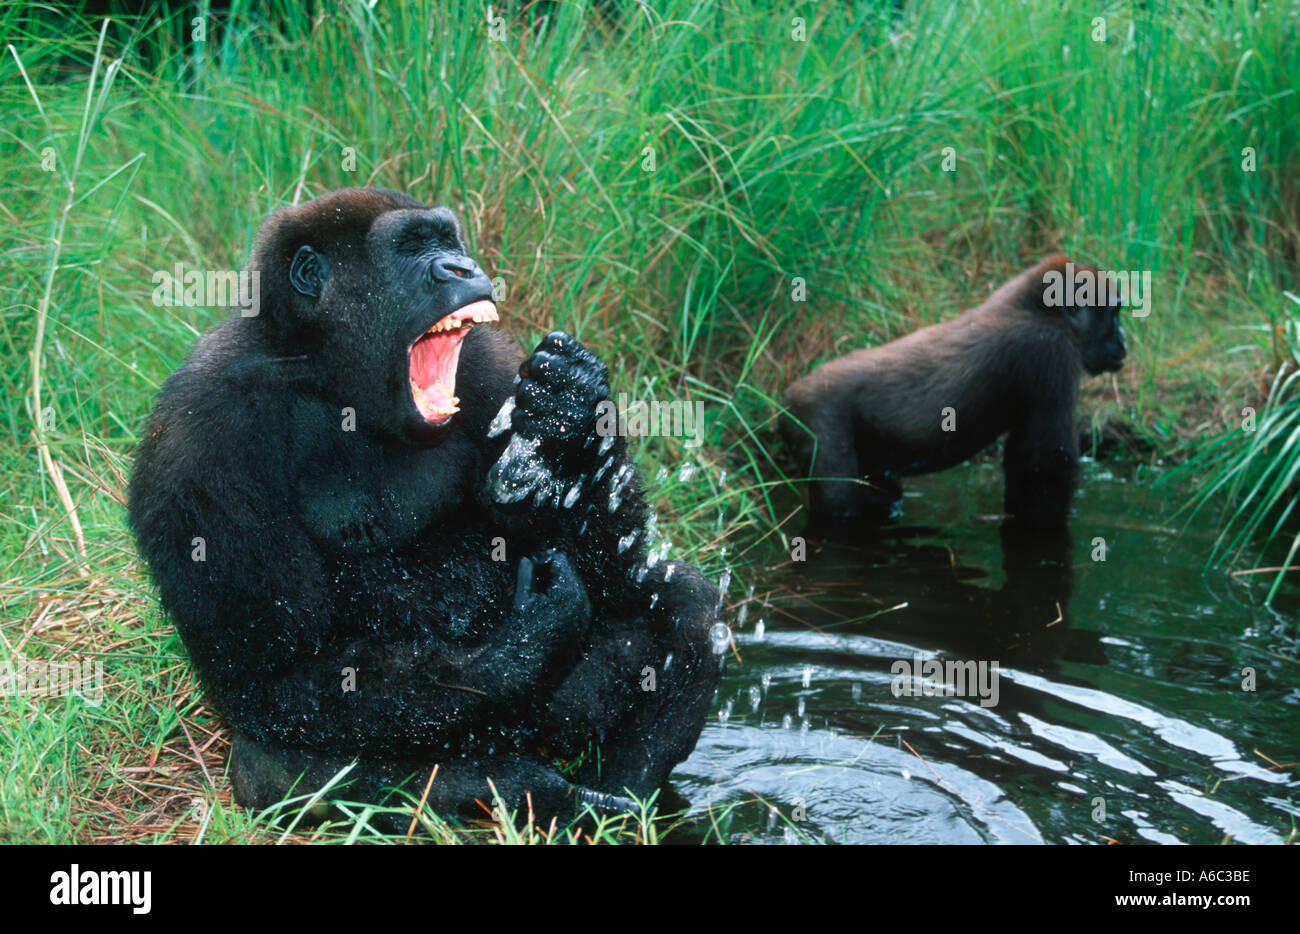 Western pianura gorilla gorilla Gorilla gorilla gorilla orfani reintrodotta nel selvaggio West Africa Centrale in via di estinzione Foto Stock